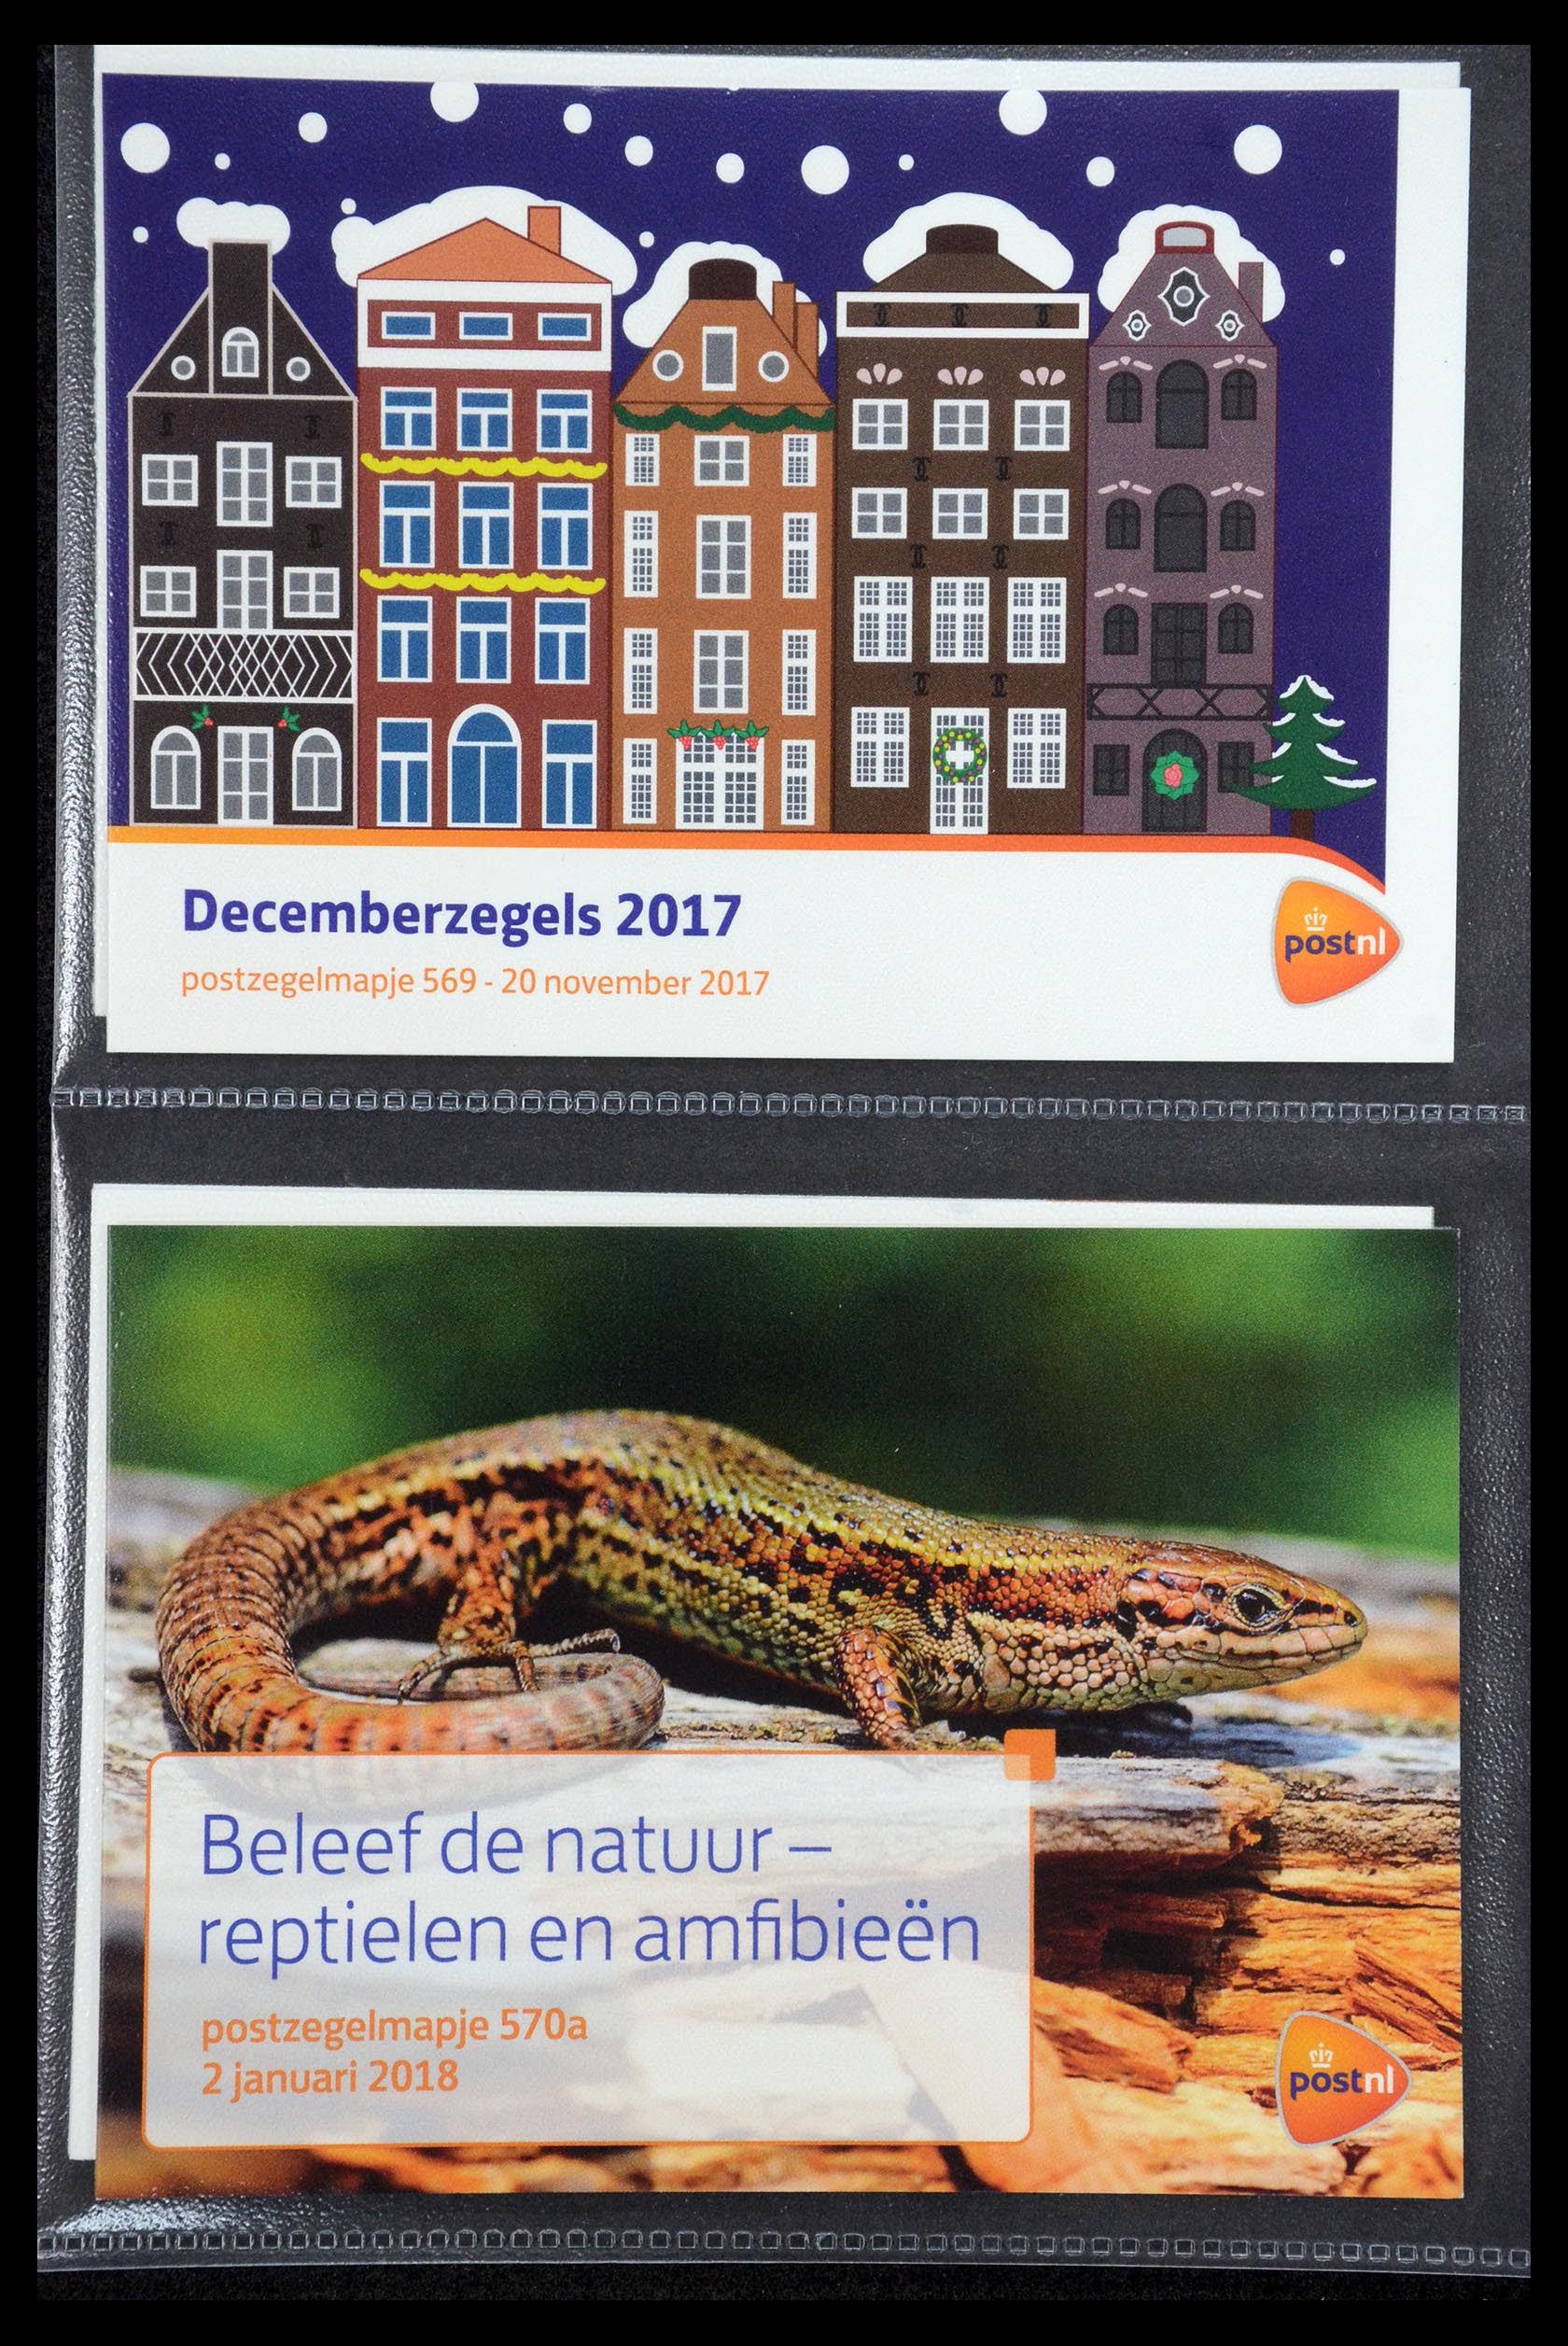 35187 342 - Stamp Collection 35187 Netherlands PTT presentation packs 1982-2019!